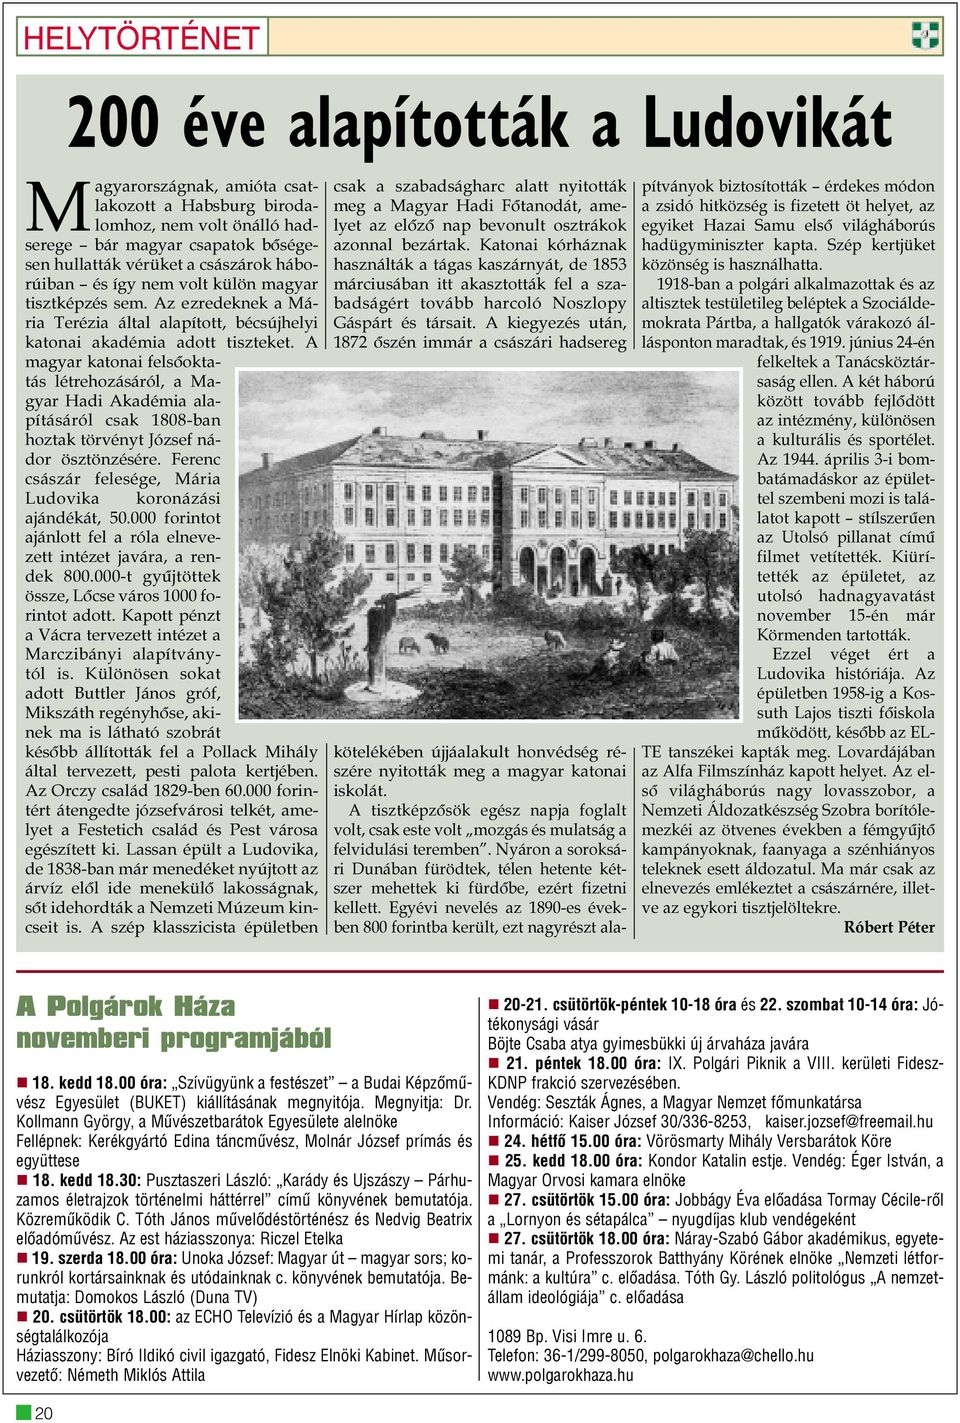 A magyar katonai felsõoktatás létrehozásáról, a Magyar Hadi Akadémia alapításáról csak 1808-ban hoztak törvényt József nádor ösztönzésére.